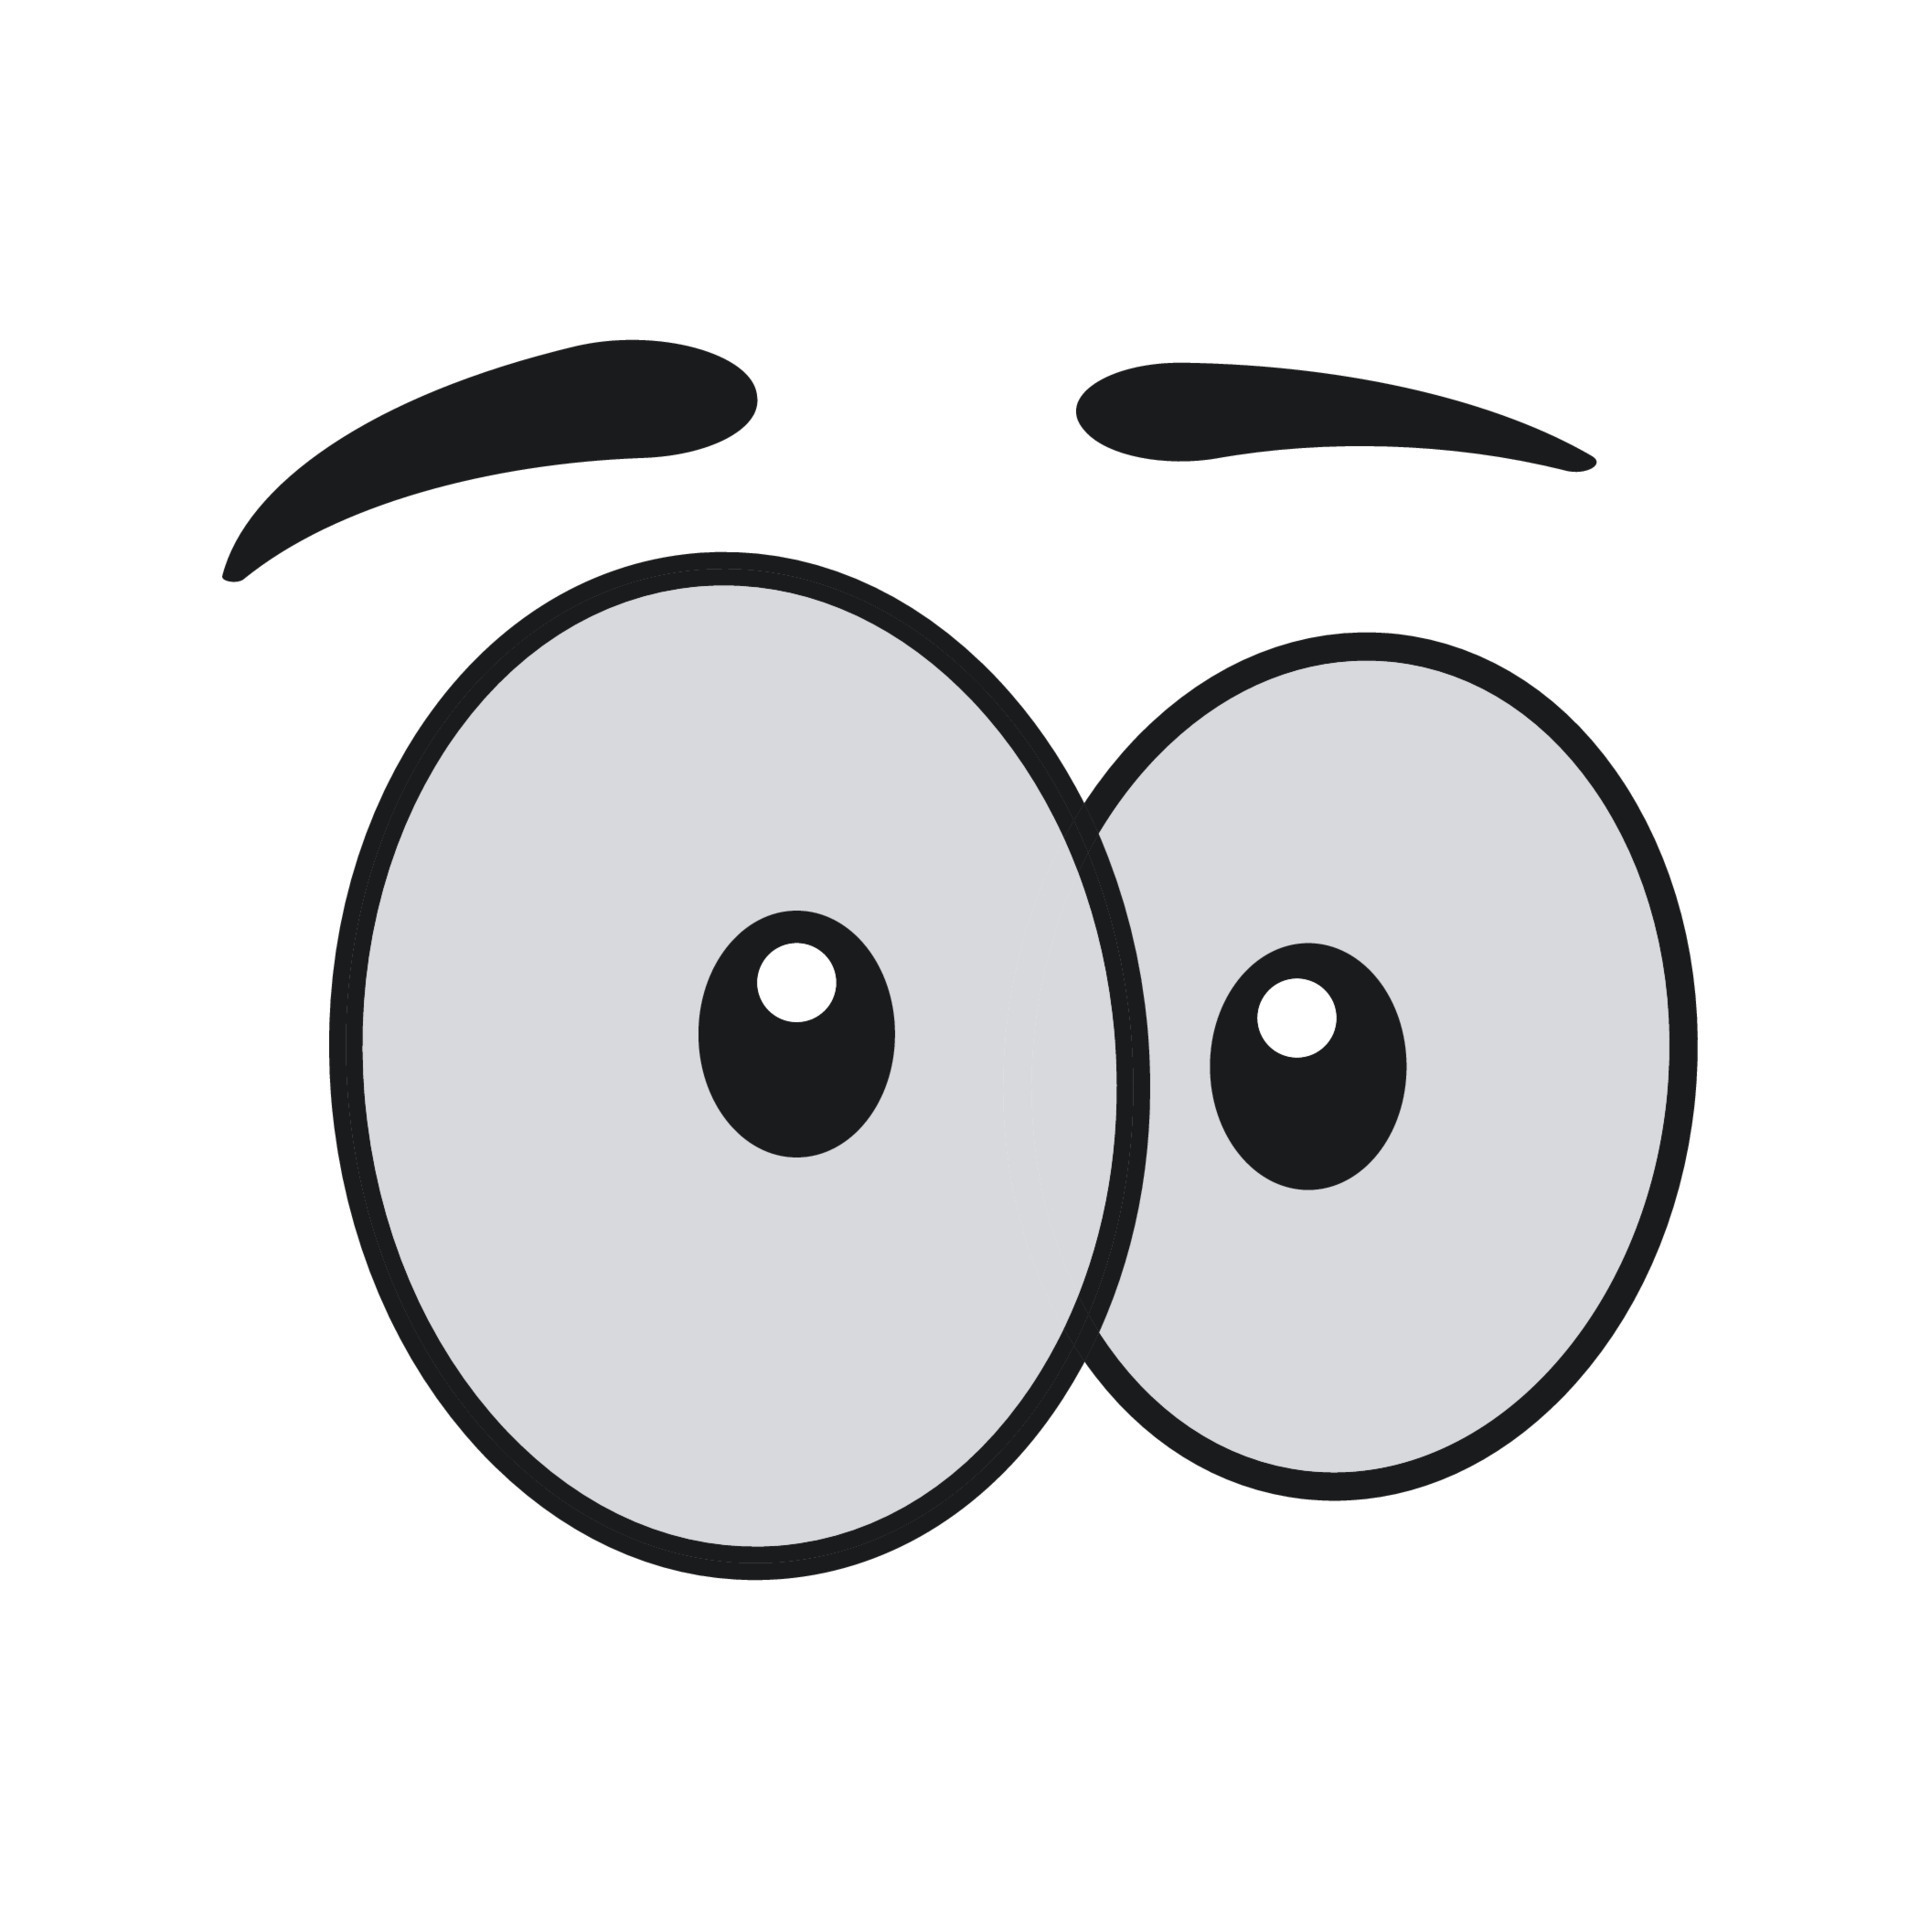 Vetores de Rostos De Desenhos Animados Olhos Expressivos E Boca Sorrindo  Chorando E Surpreso Personagens Rosto Expressões Personagens Emoji Emoticon  Bonito Em Estilo Japonês Conjunto De Ícones De Ilustração Vetorial Isolado e